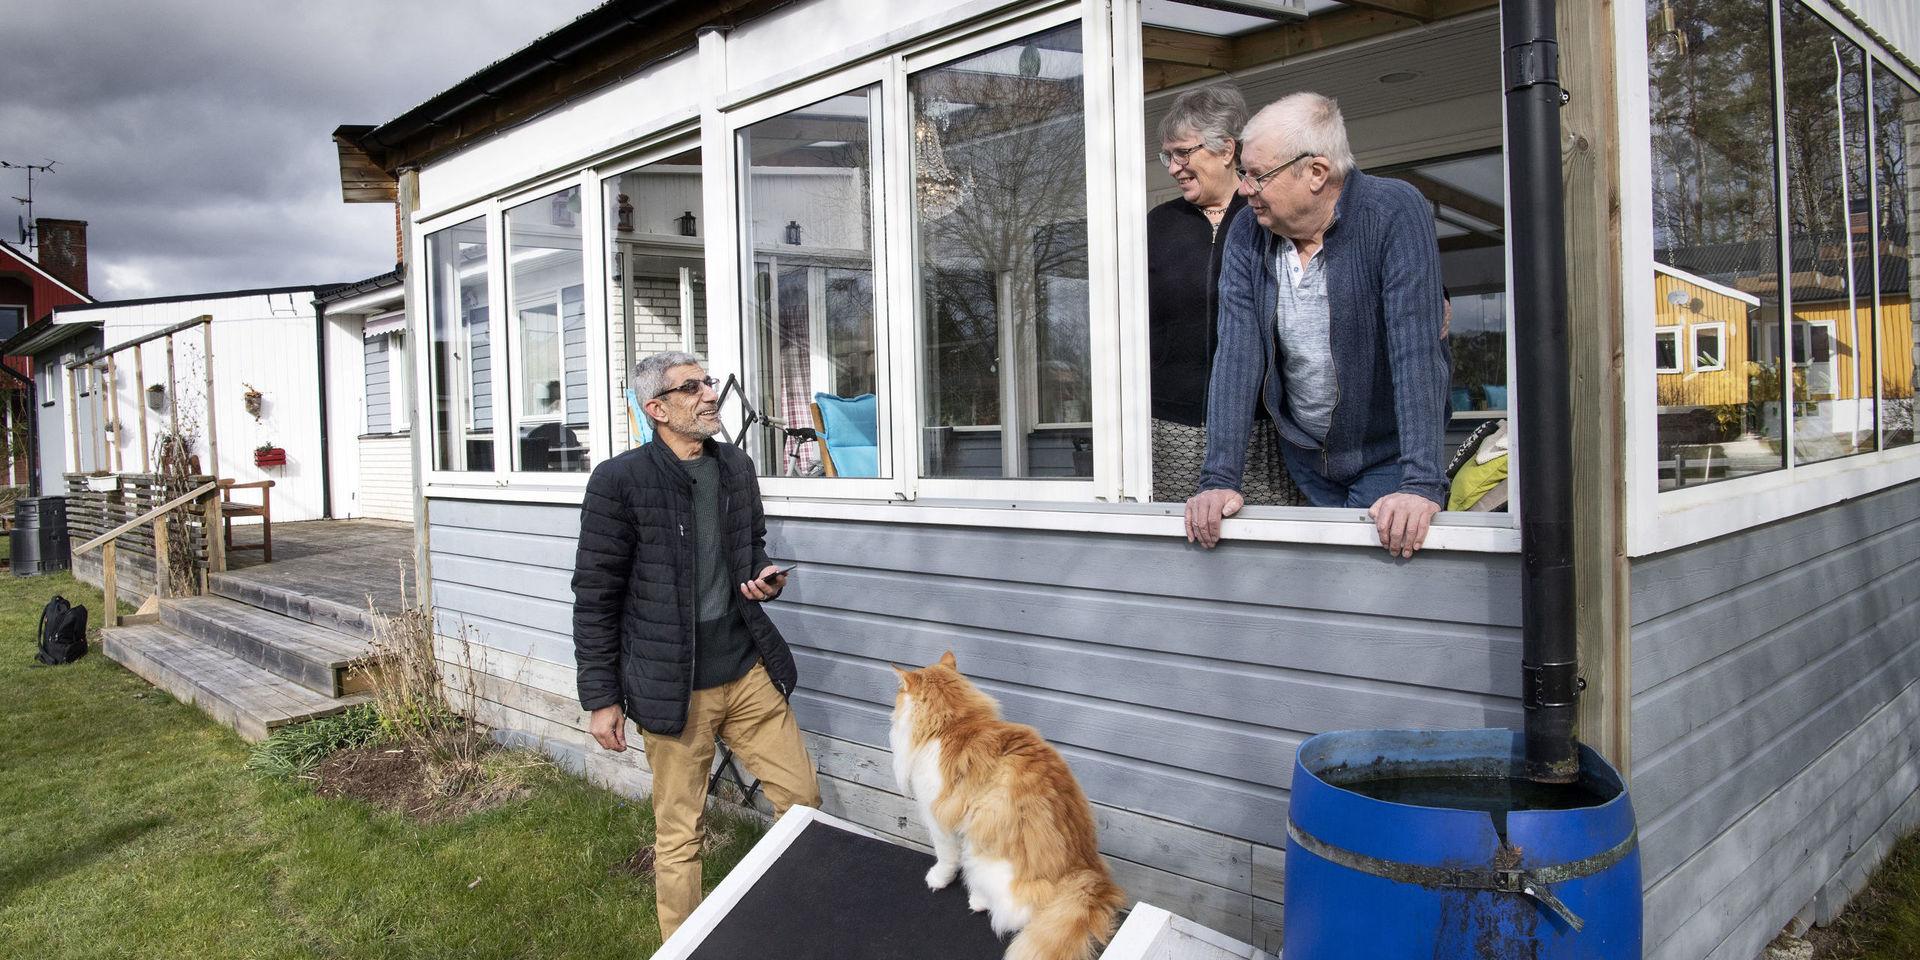 Ahmad Alkassar kom som flykting till Sverige 2015 och fick god hjälp av lokalsamhället då. Nu vill han ge tillbaka till ortsbor i Coronakrisen. Här hjälper han Sjöviksborna Lisbeth Lindblad, Sten Lindblad och katten Manne.